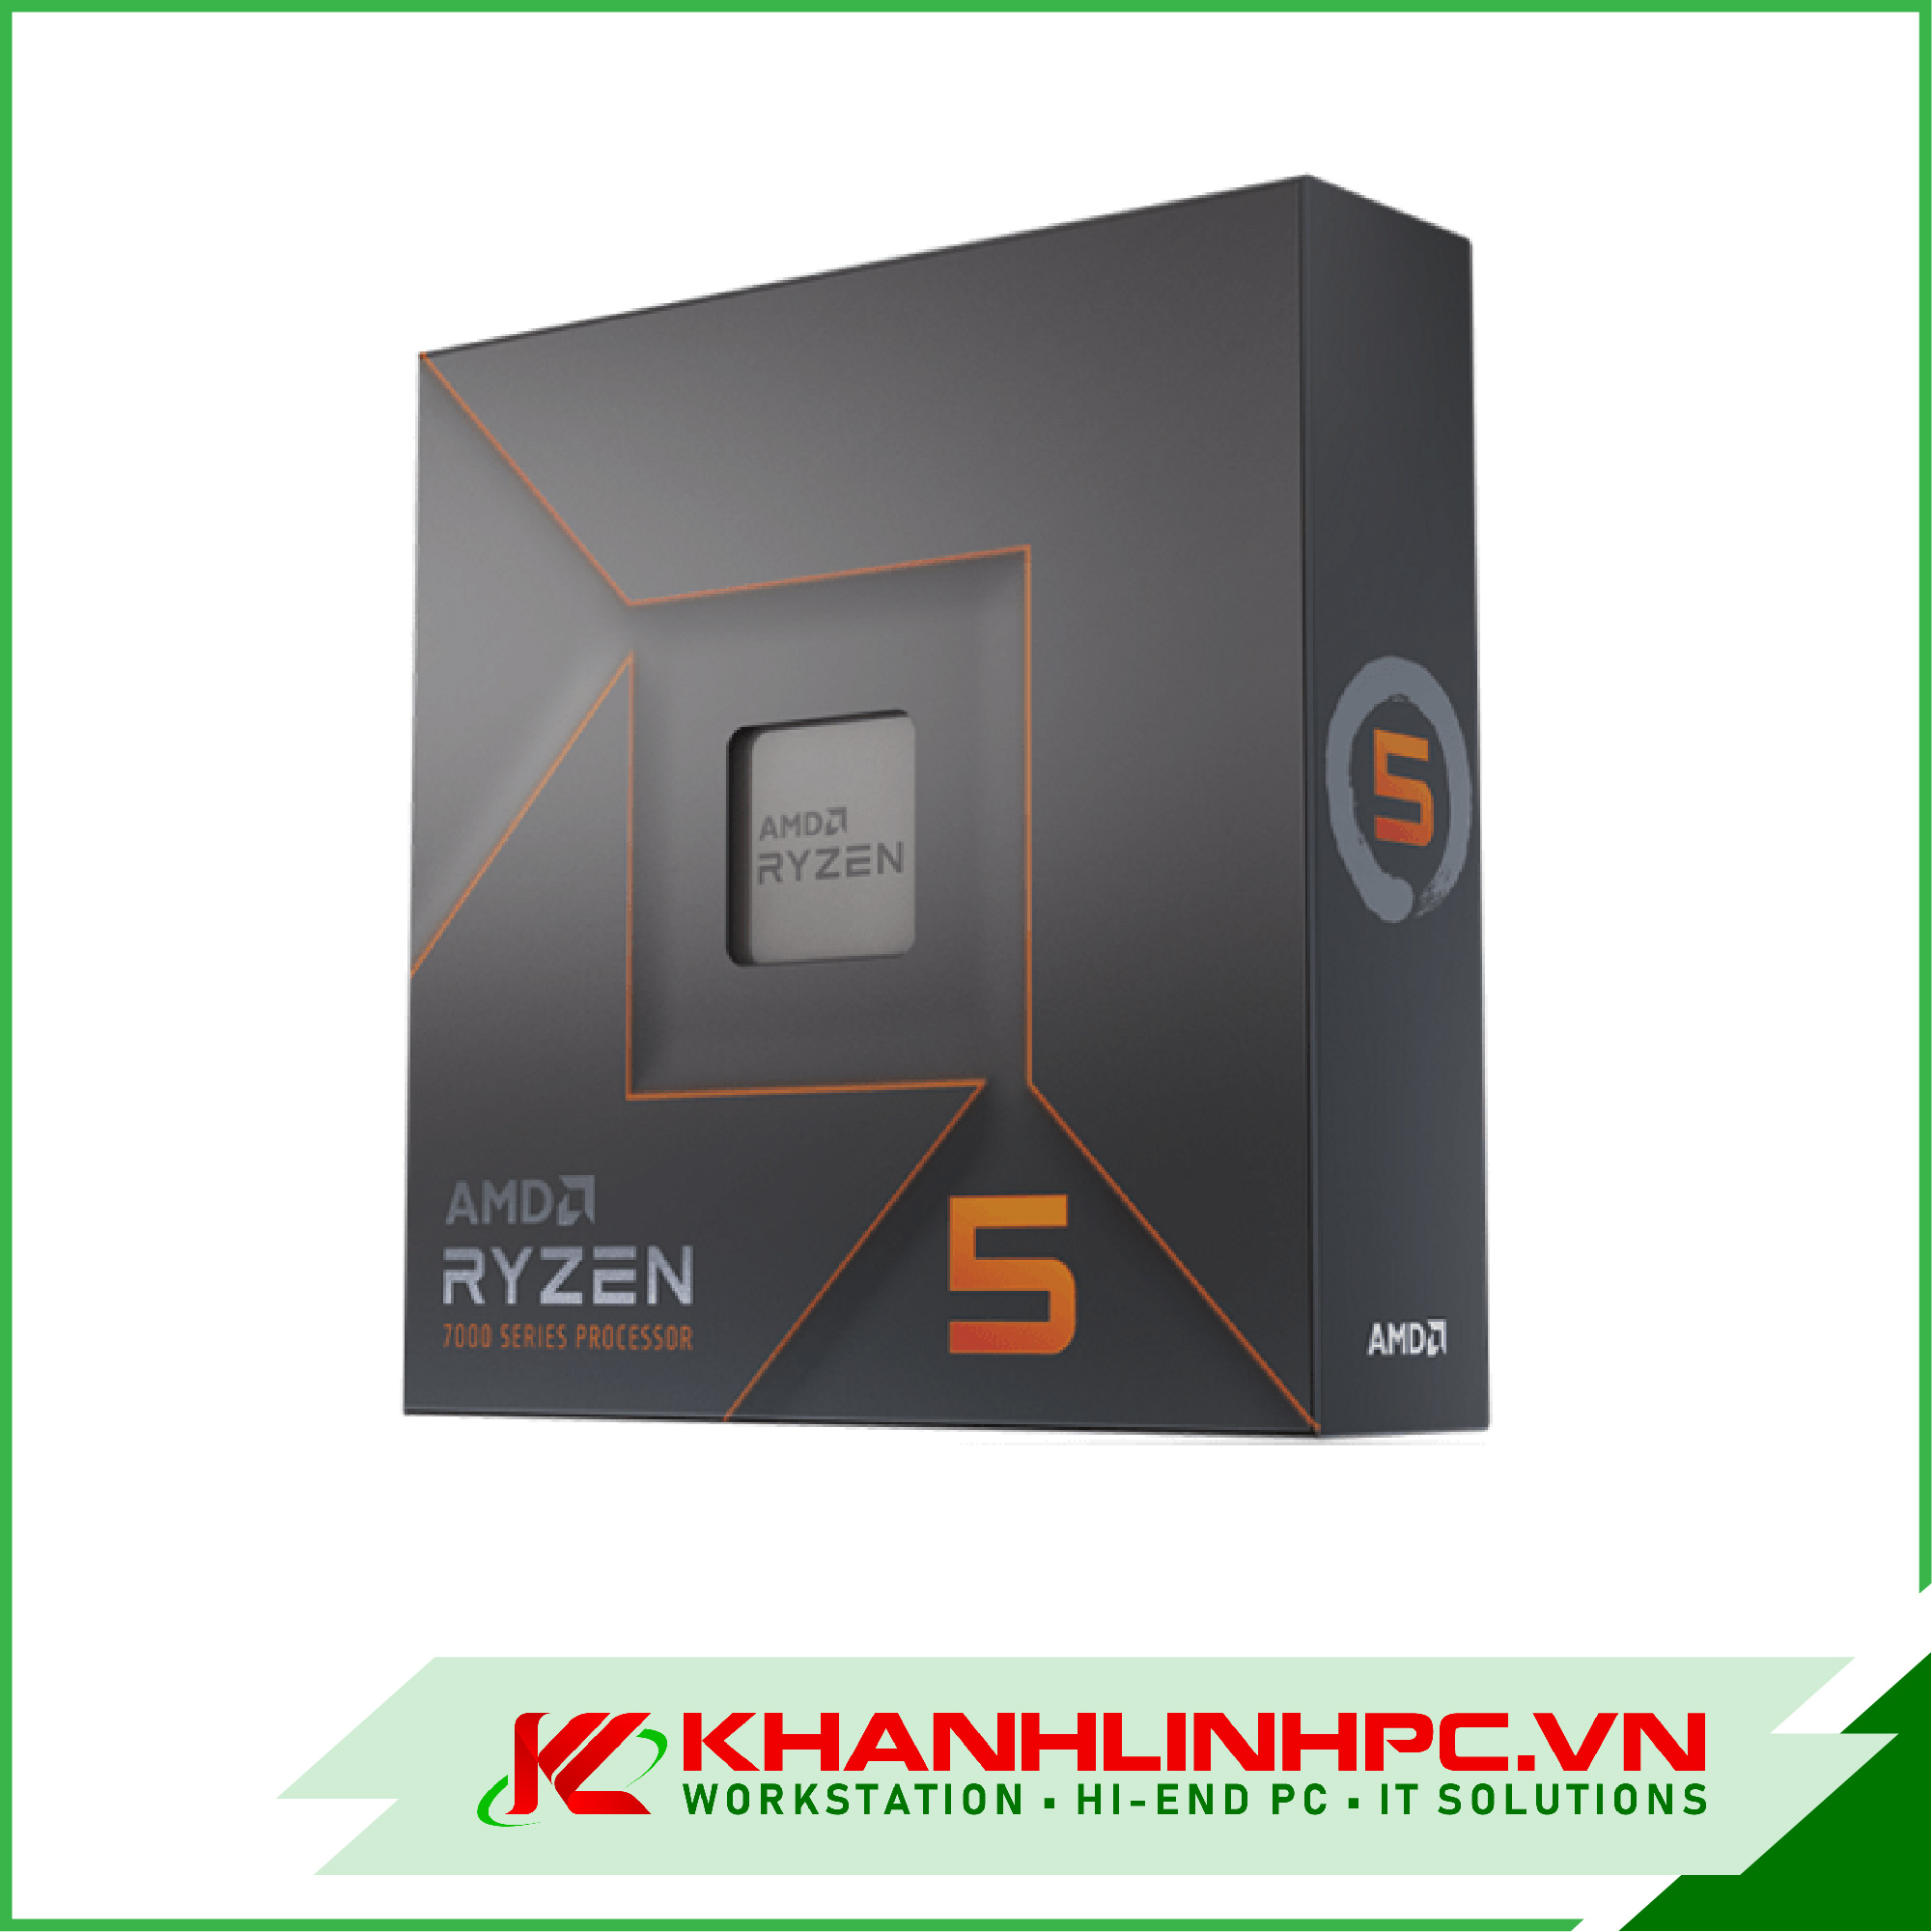 amd ryzen 5 7600x processor - 6 nhân 12 luồng, 4.7 ghz up to 5.3 ghz, am5 zen 4